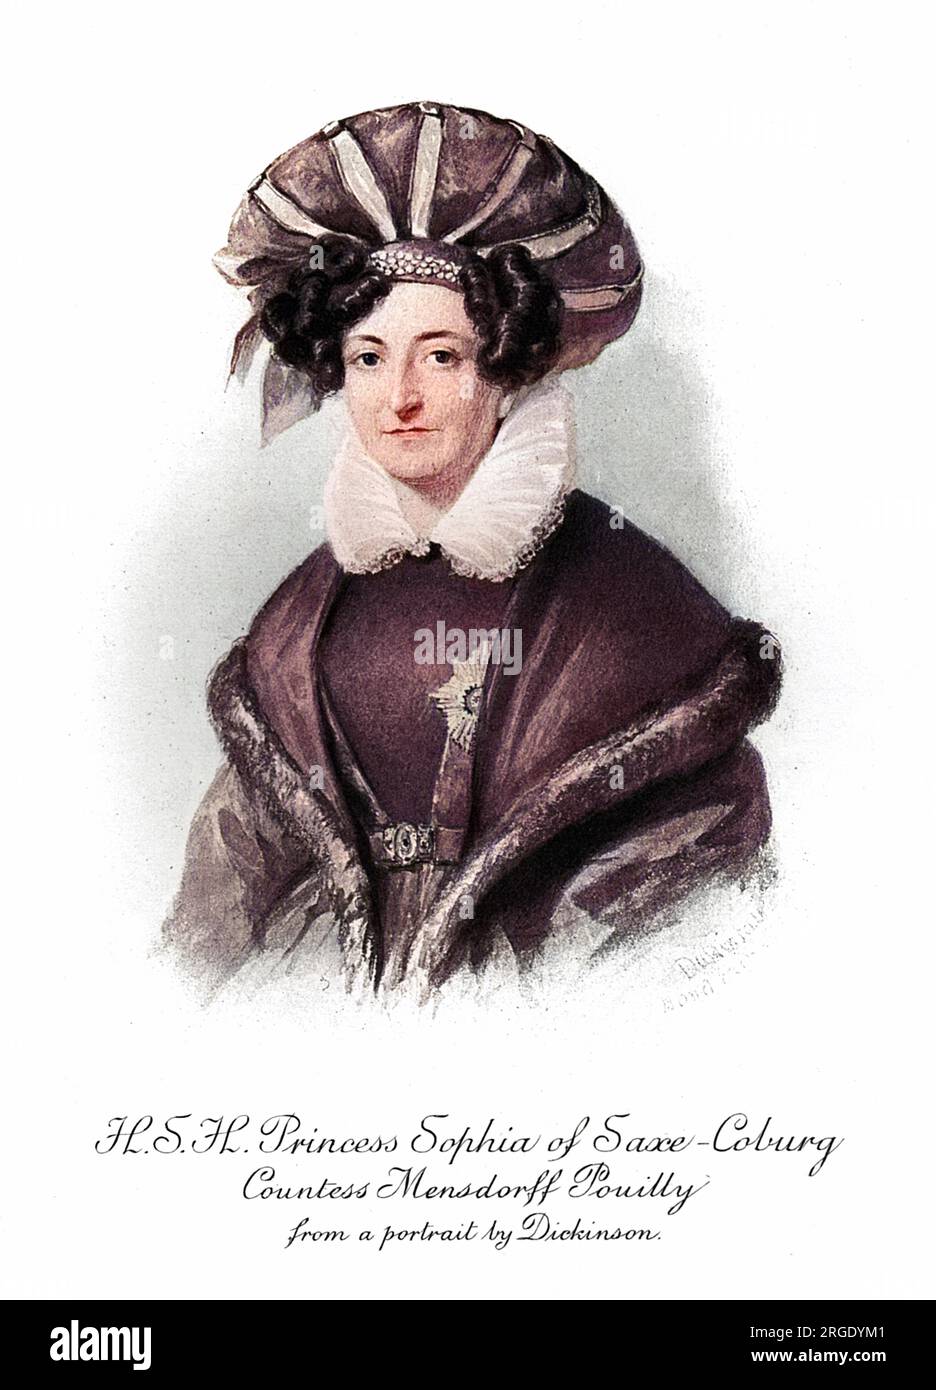 Principessa Sophia di Sassonia-Coburg-Saalfeld, contessa Mensdorff Pouilly (1778-1835), sorella del re Leopoldo i dei belgi e della duchessa di Kent, madre della regina Vittoria. Foto Stock